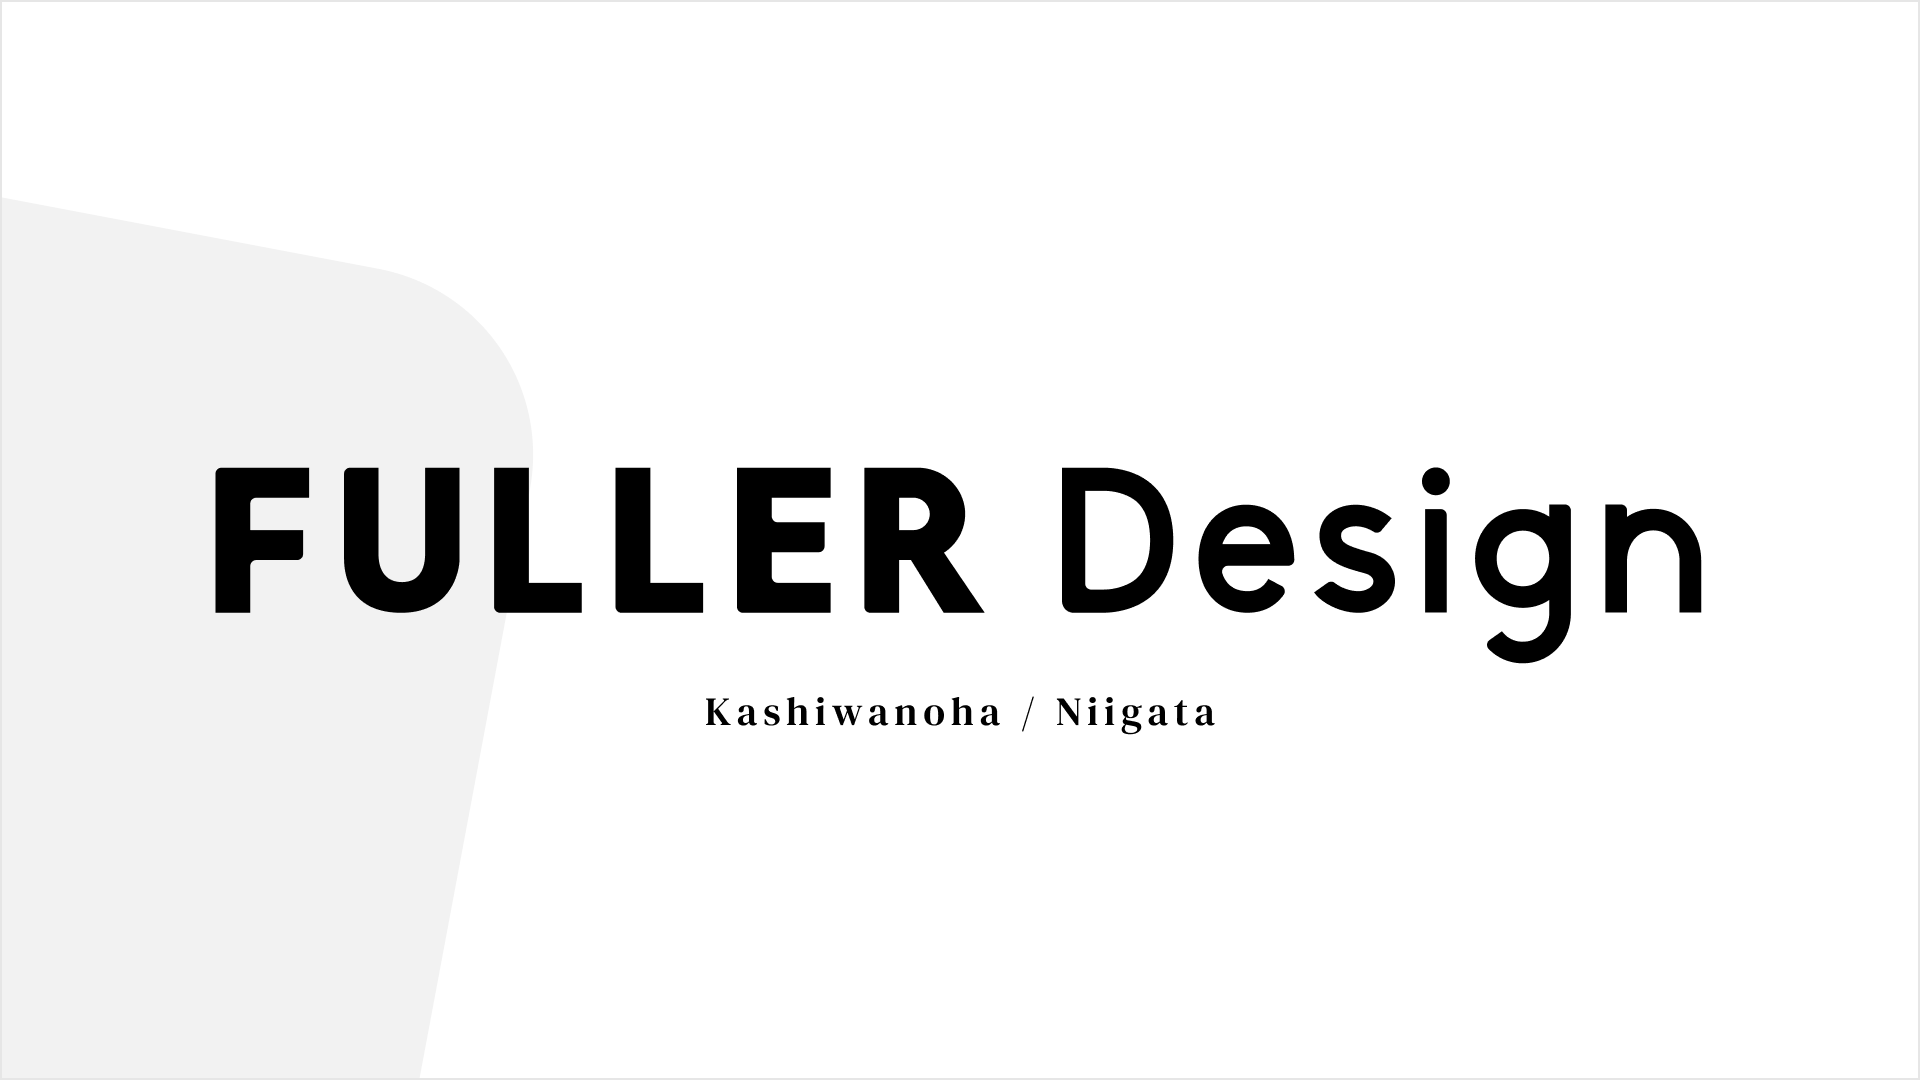 デジタルプロダクトデザインに特化したデザイナー組織「フラーデザイン」新設